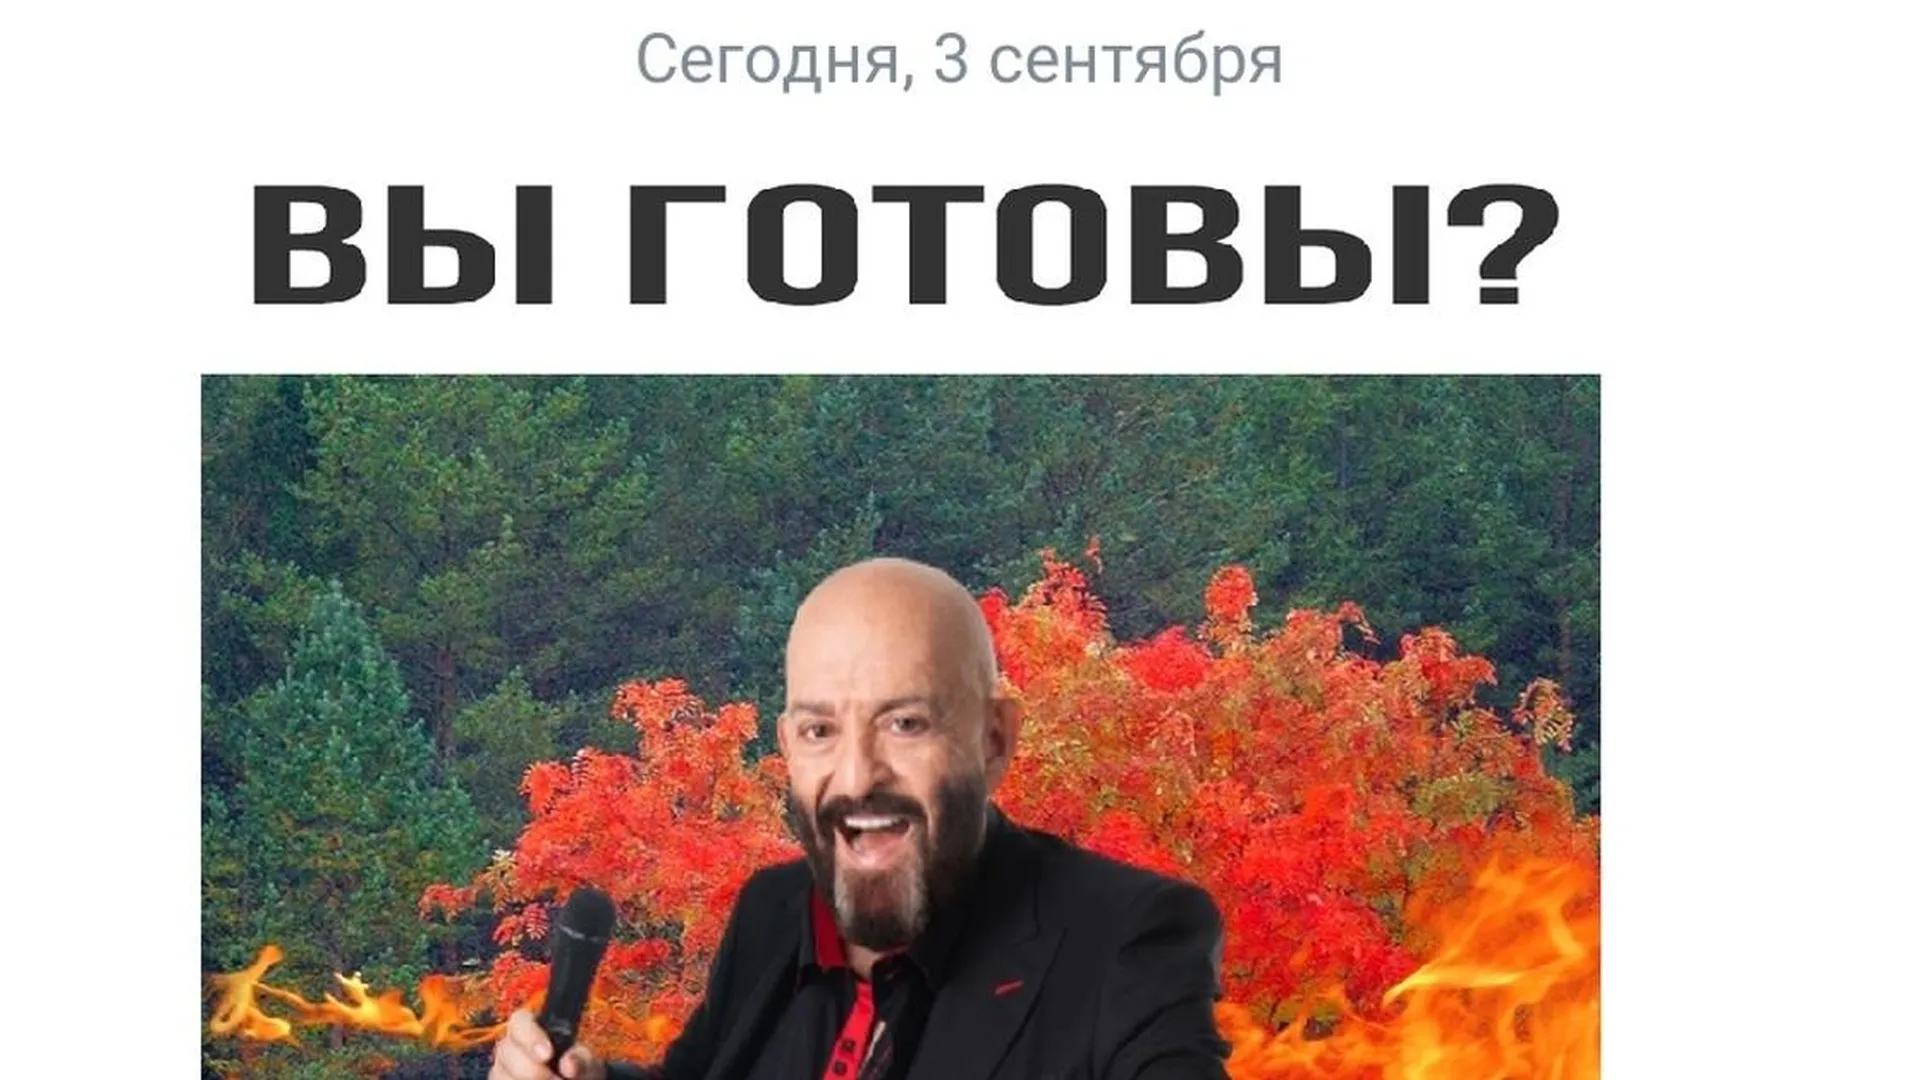 Pikabu.ru